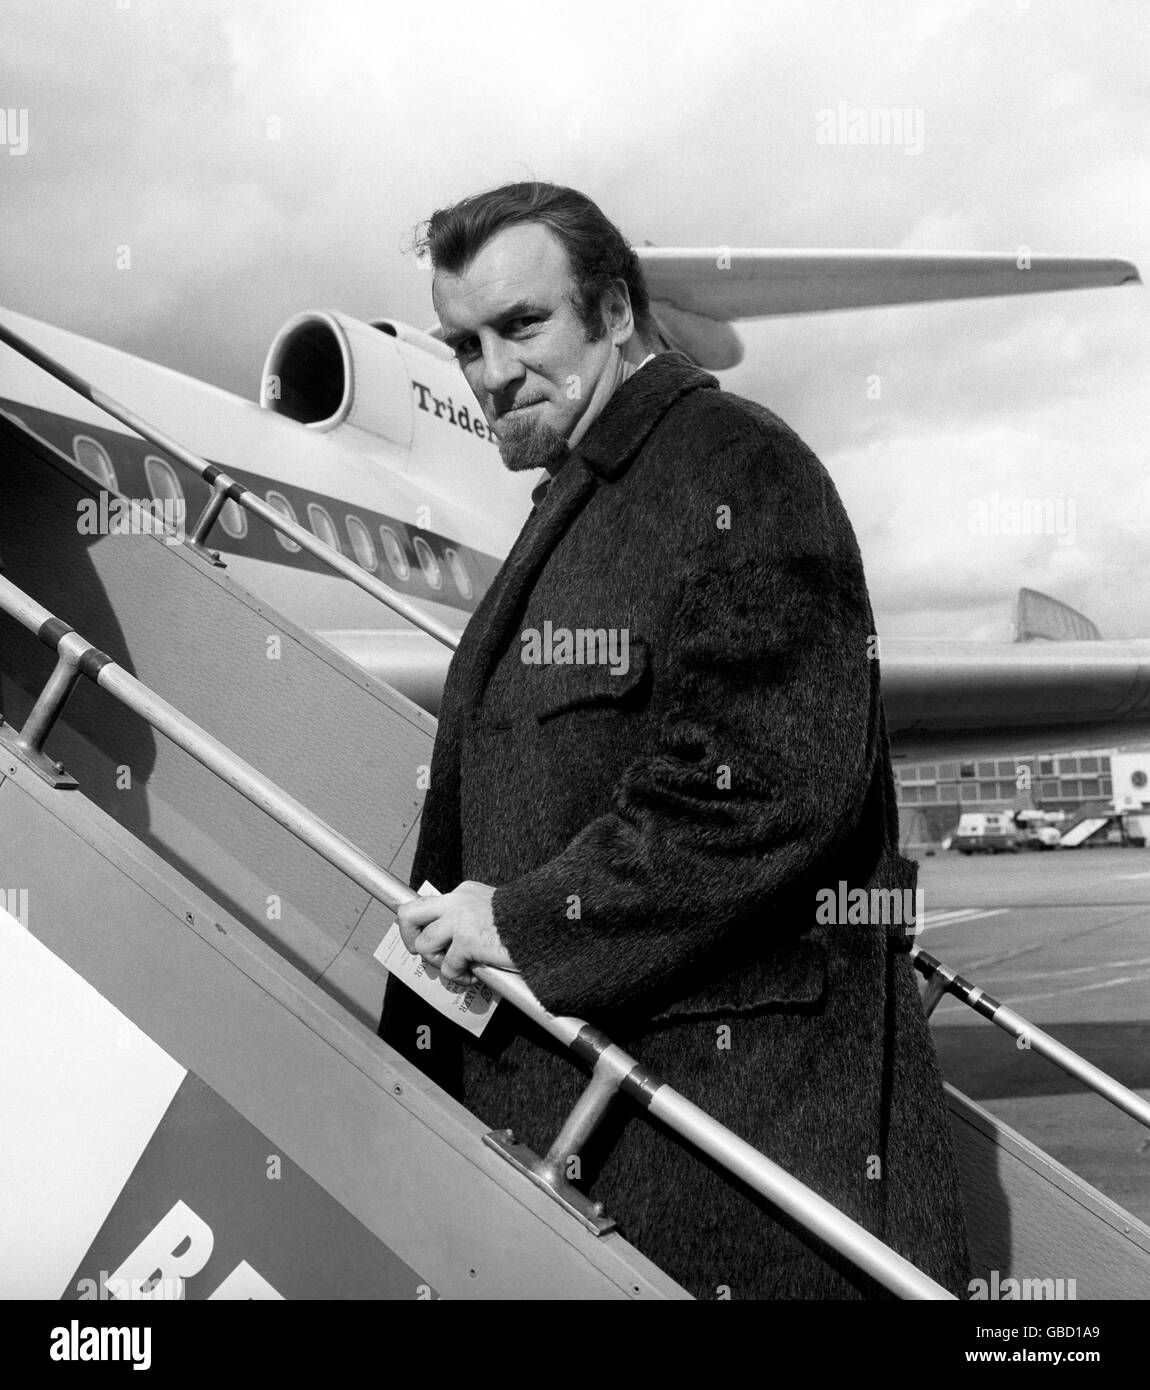 Música - Acker Bilk - Aeropuerto Heathrow - Londres - 1967. El líder de la banda barbuda, Acker Bilk, sale del aeropuerto de Heathrow para una gira de conciertos por Alemania. Foto de stock